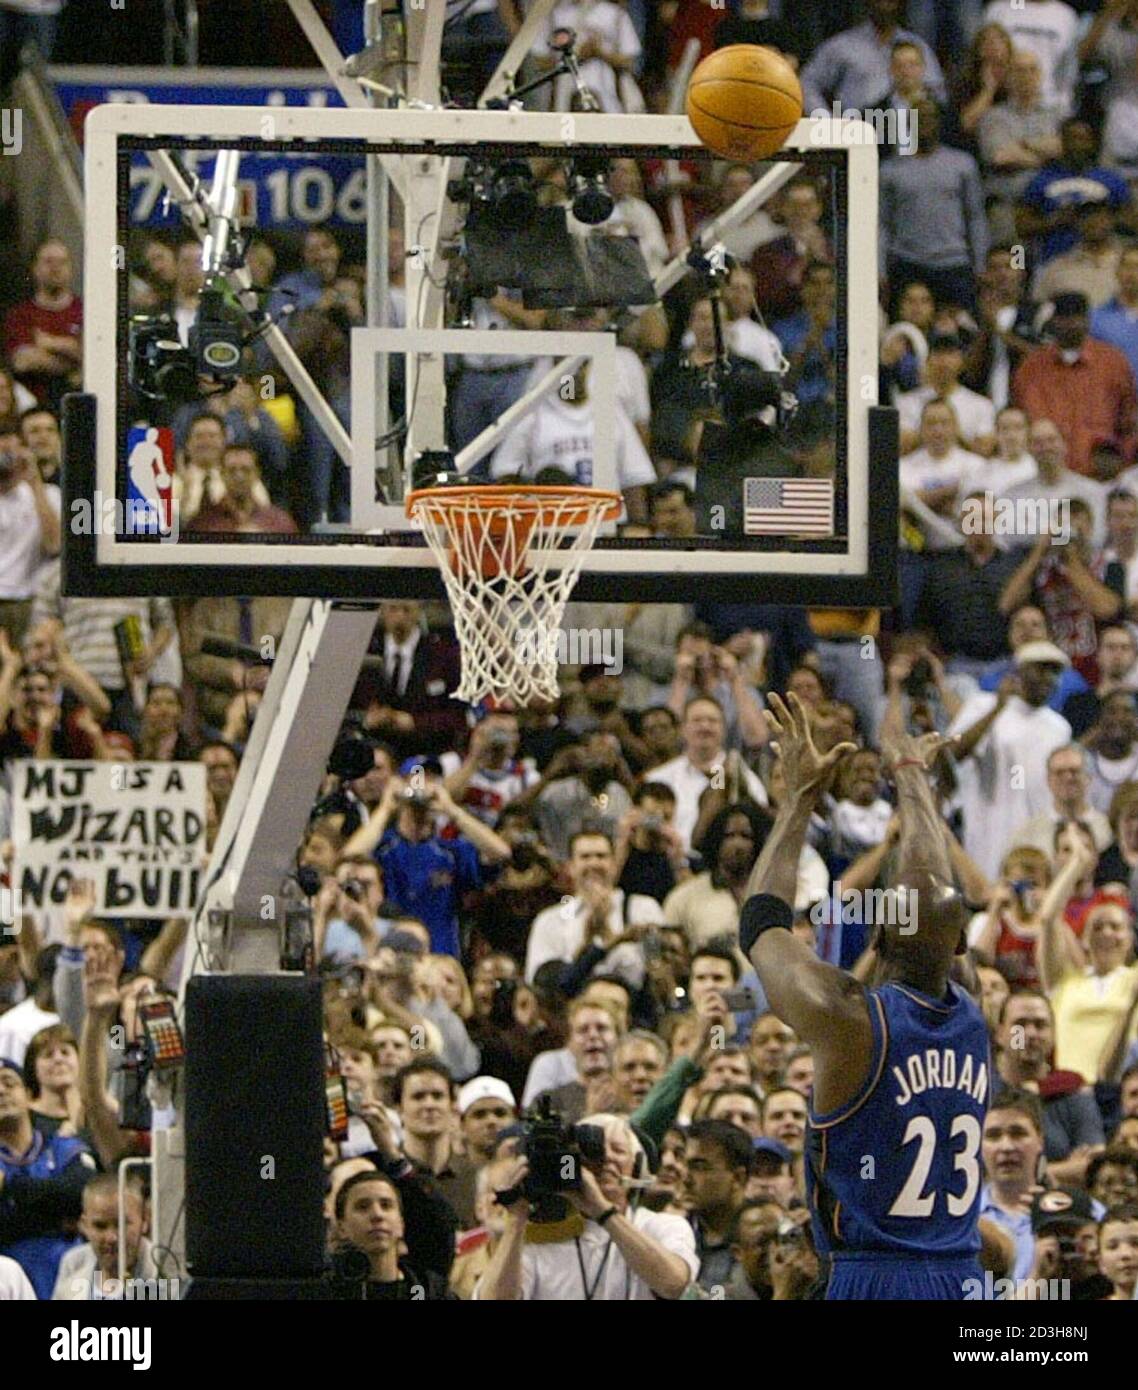 botella pescado angustia Michael Jordan de los Washington Wizards anota el punto final de su carrera  en un tiro sucio con un minuto y 45 segundos en el juego contra los 76ers  de Filadelfia, en